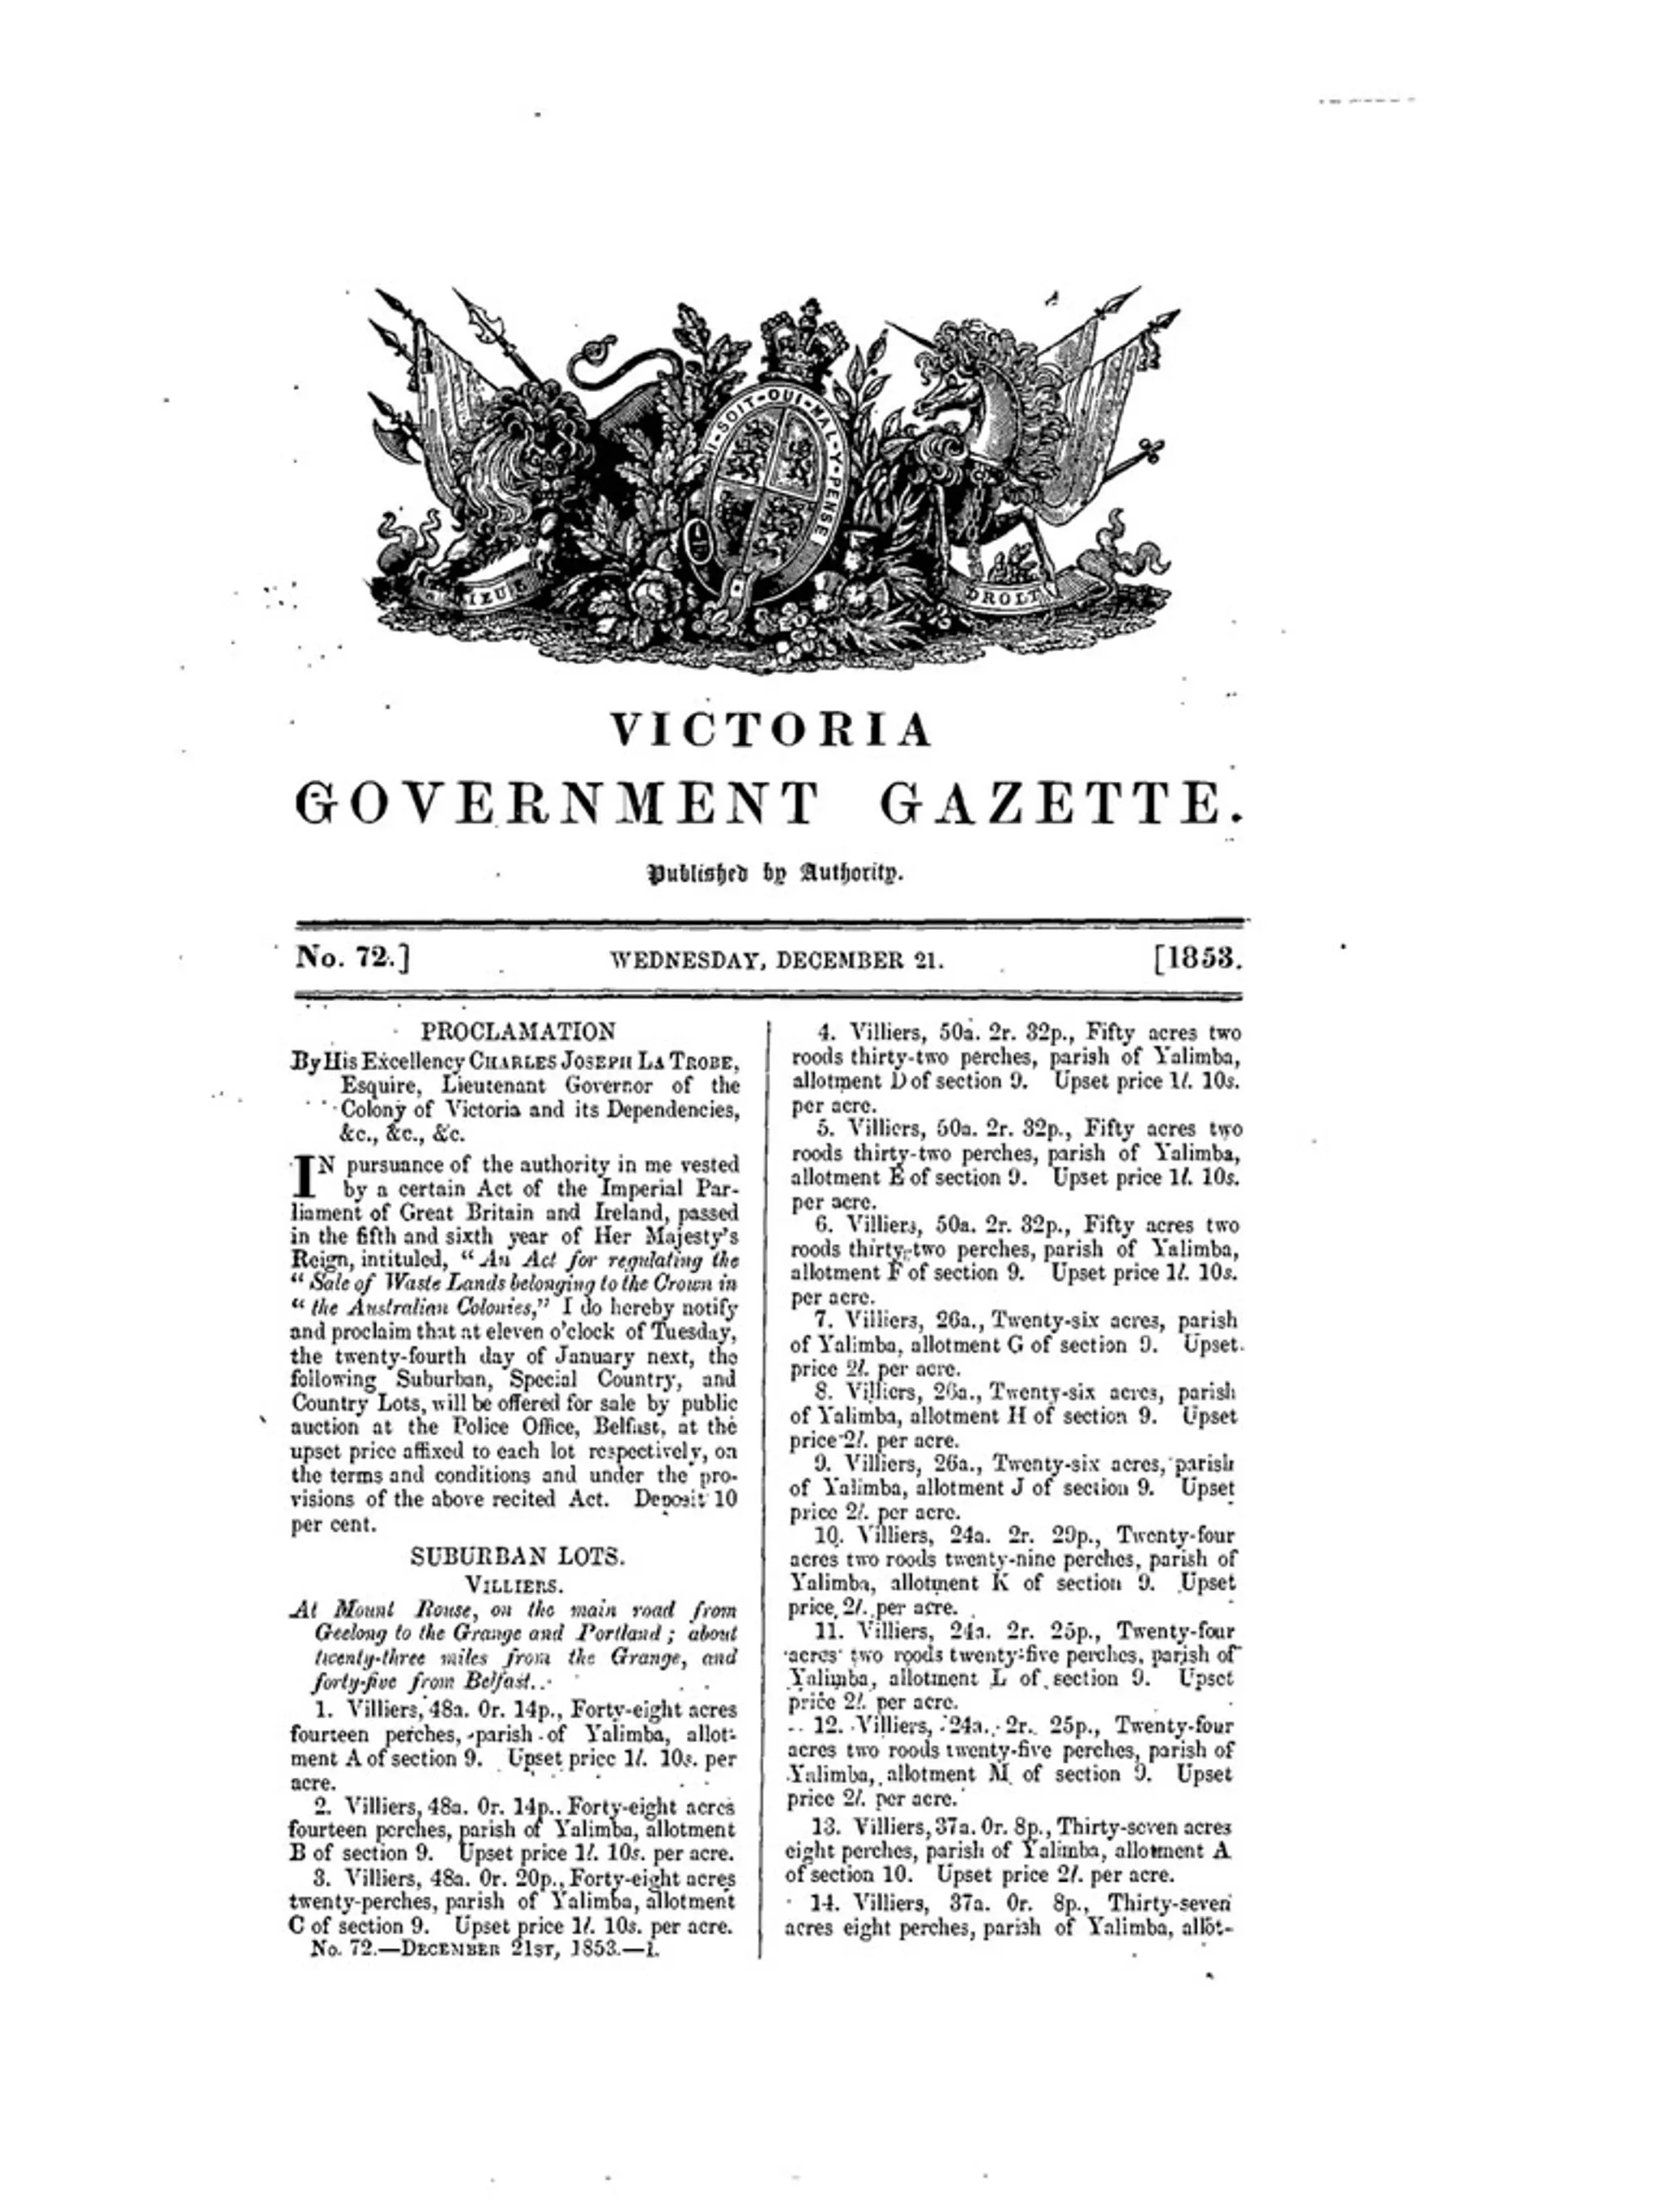 VICTORIA GOVERNMENT GAZETTE. No. 72. WEDNESDAY, DECEMBER 21. 1853